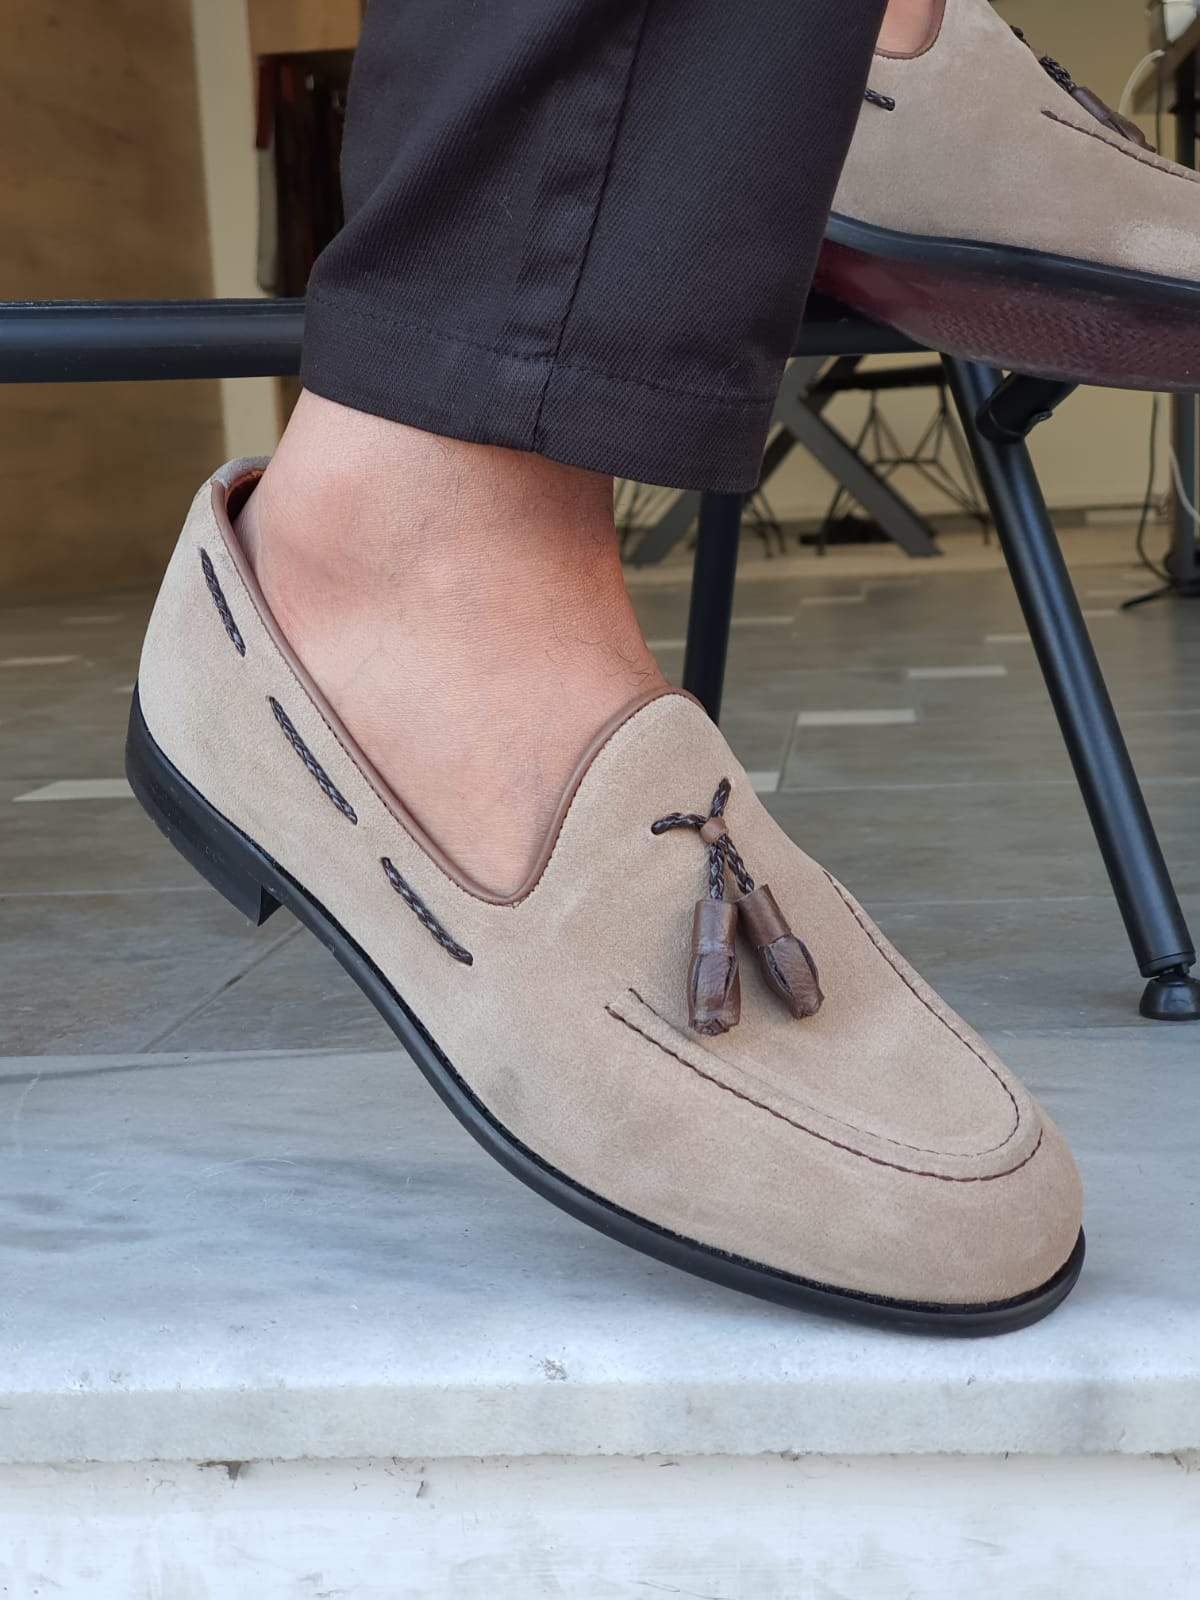 Louis Vuitton men's boat shoes  Boat shoes mens, Loafers men, Casual shoes